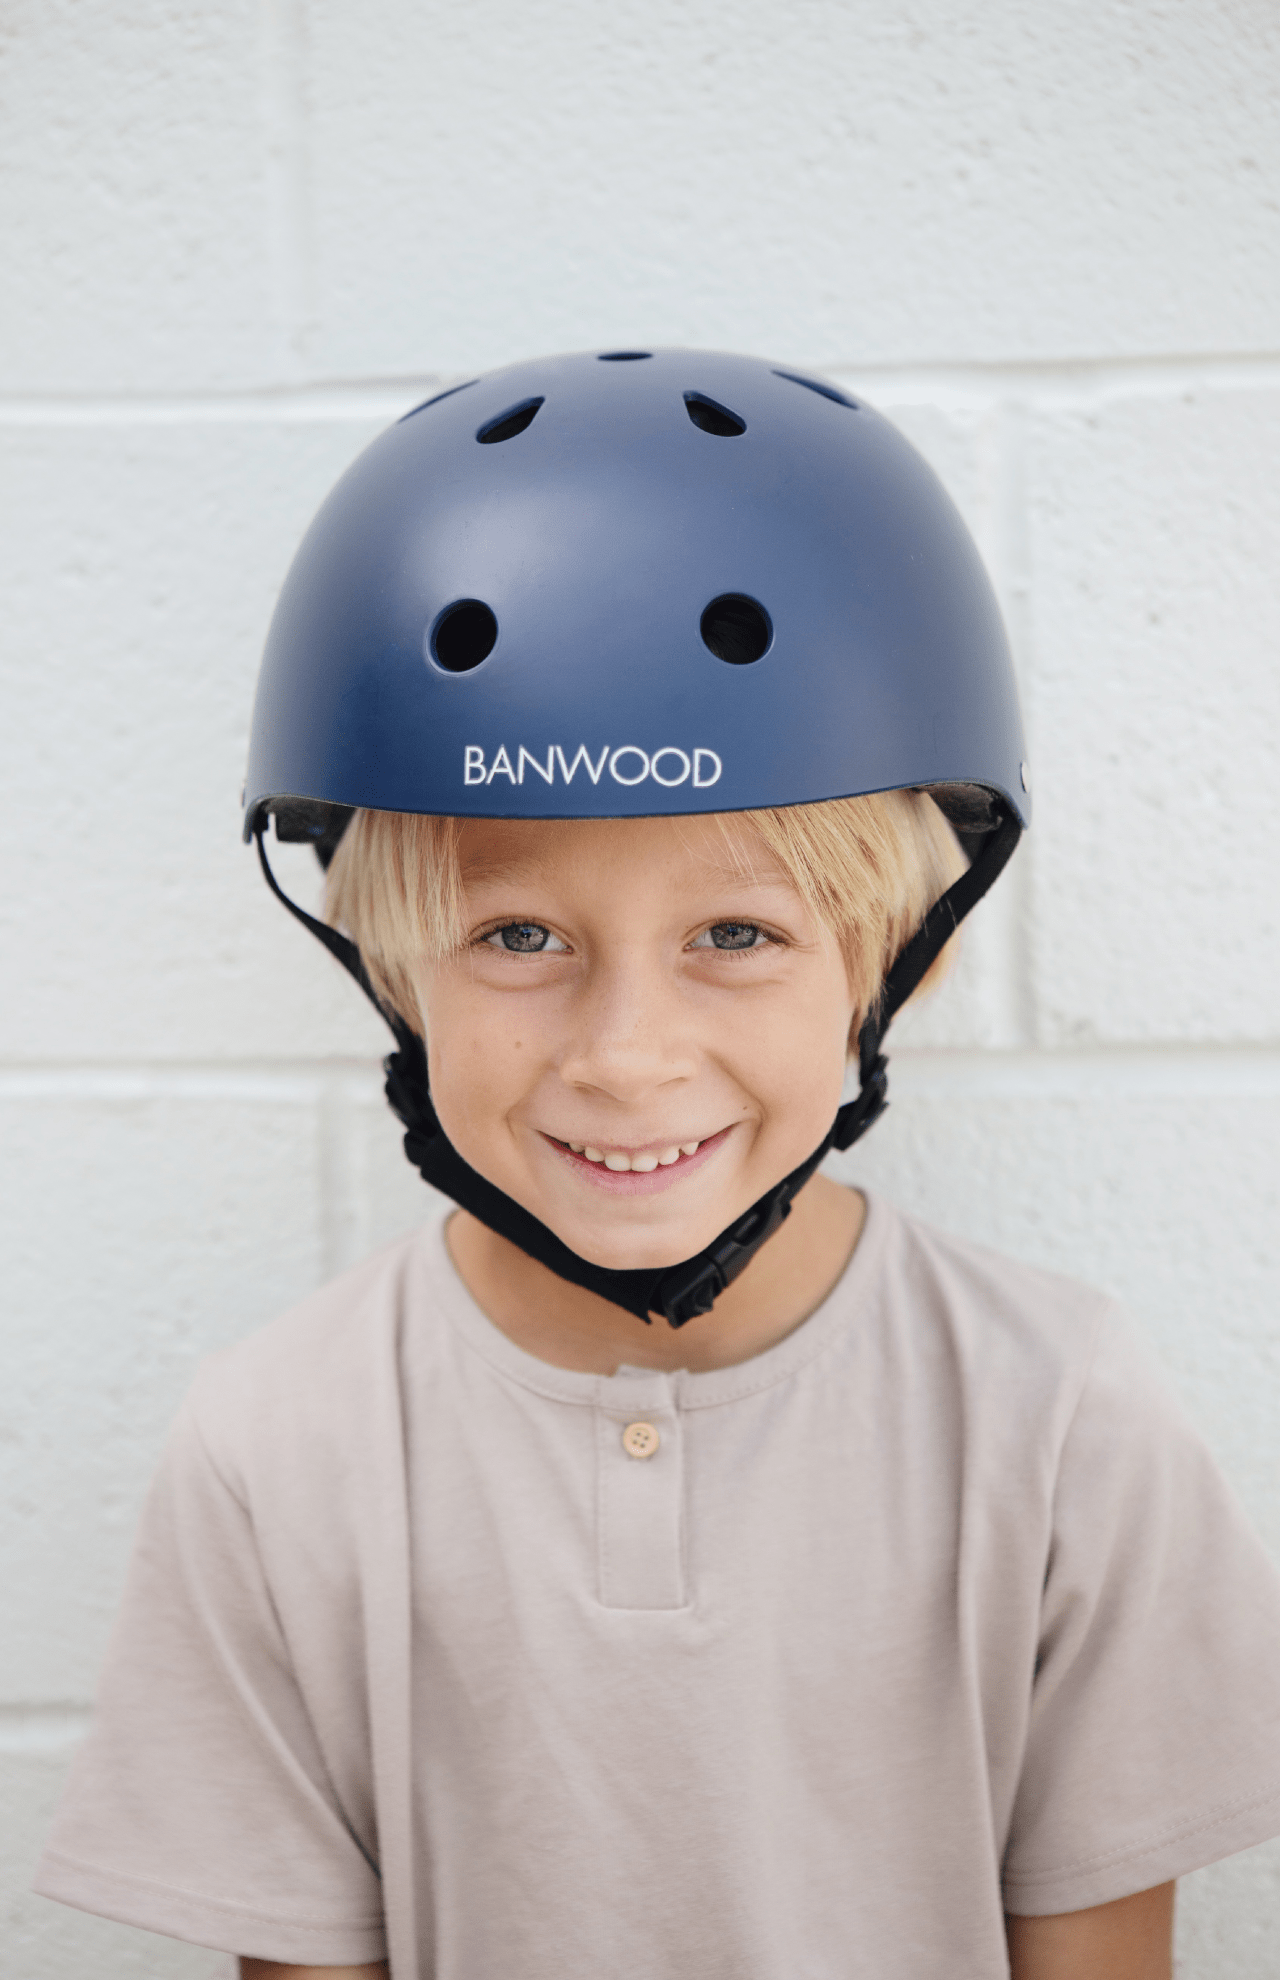 banwood helmet